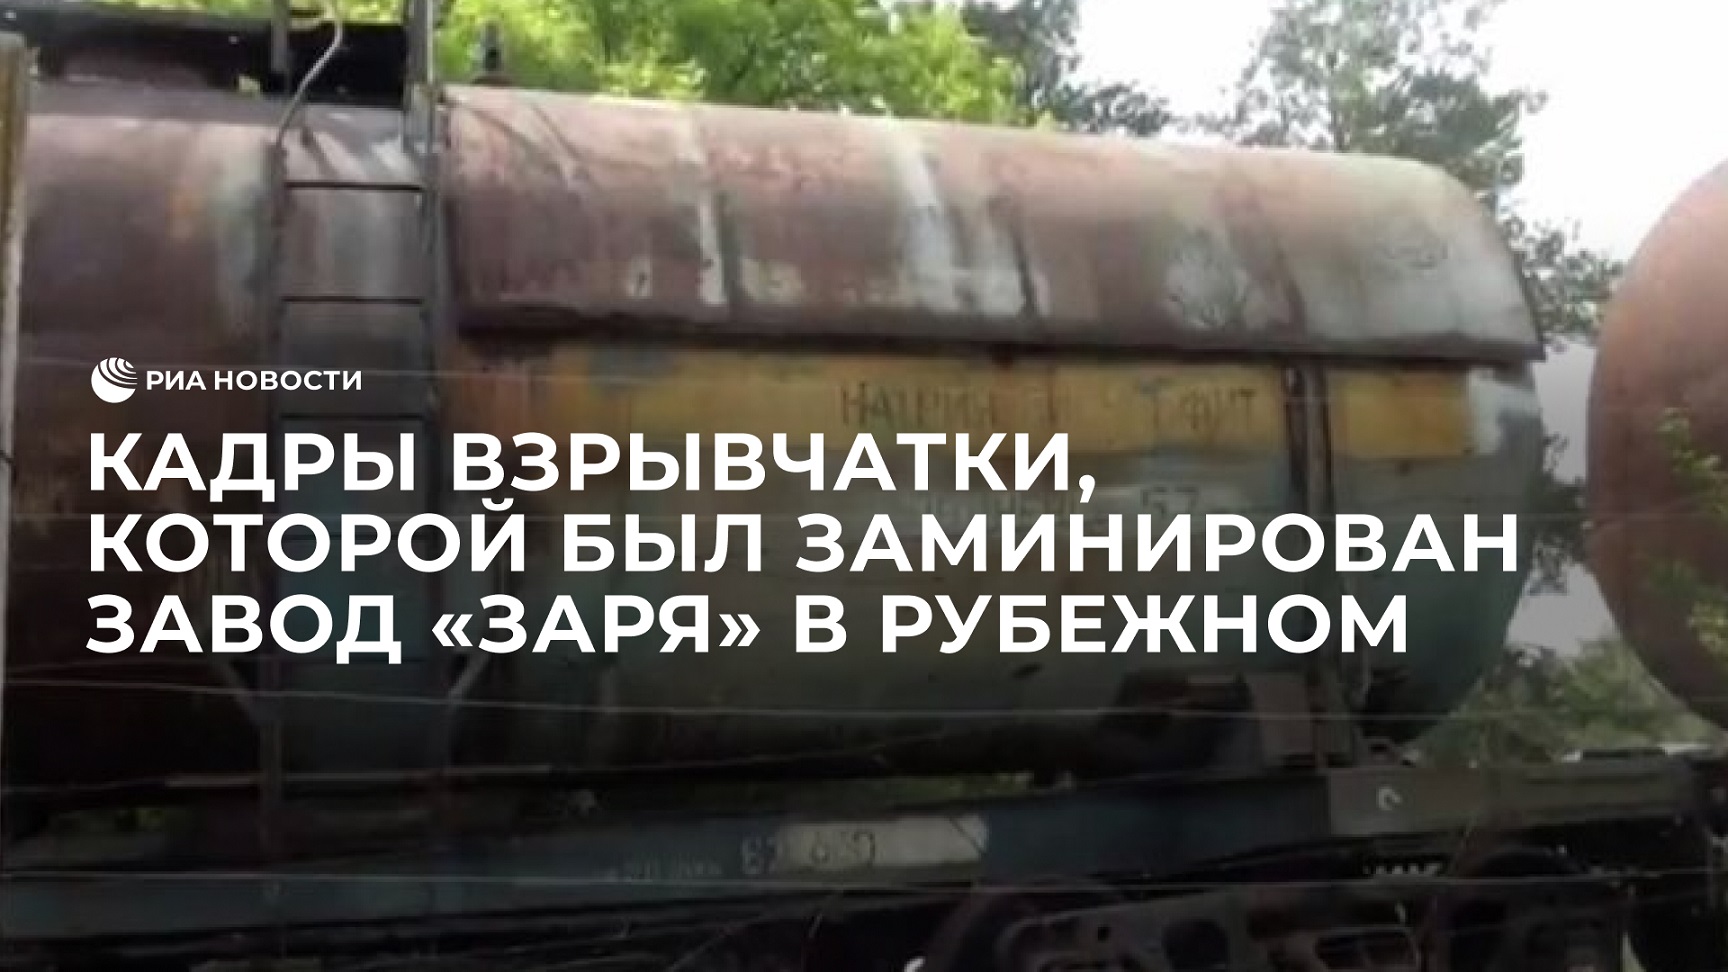 Кадры взрывчатки, которой был заминирован завод "Заря" в Рубежном